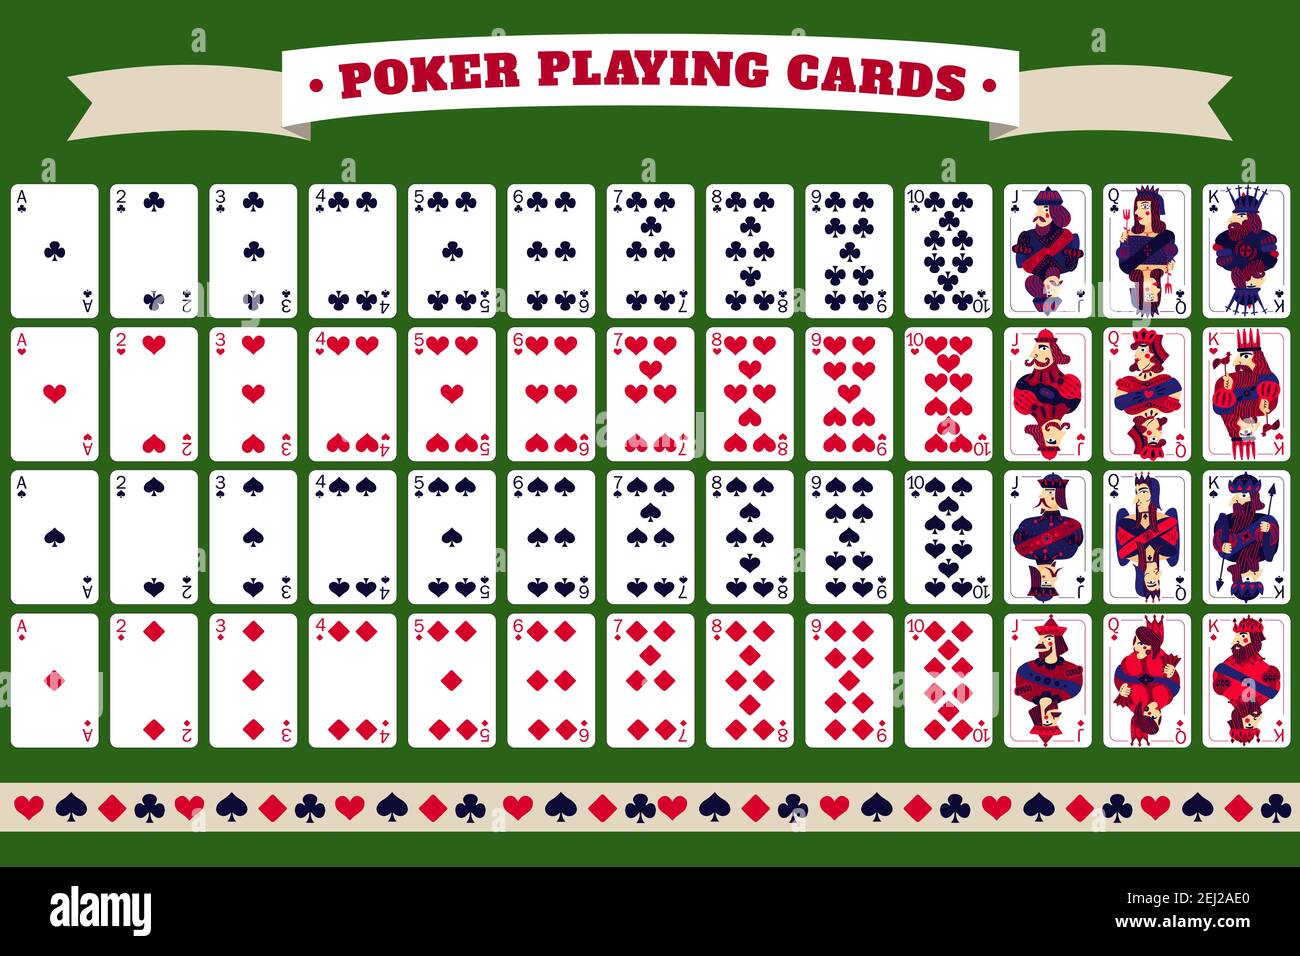 Volles Deck von Poker-Spielkarten mit Header-Band und Isolierte Karten auf  grünem Hintergrund Vektorgrafik Stock-Vektorgrafik - Alamy